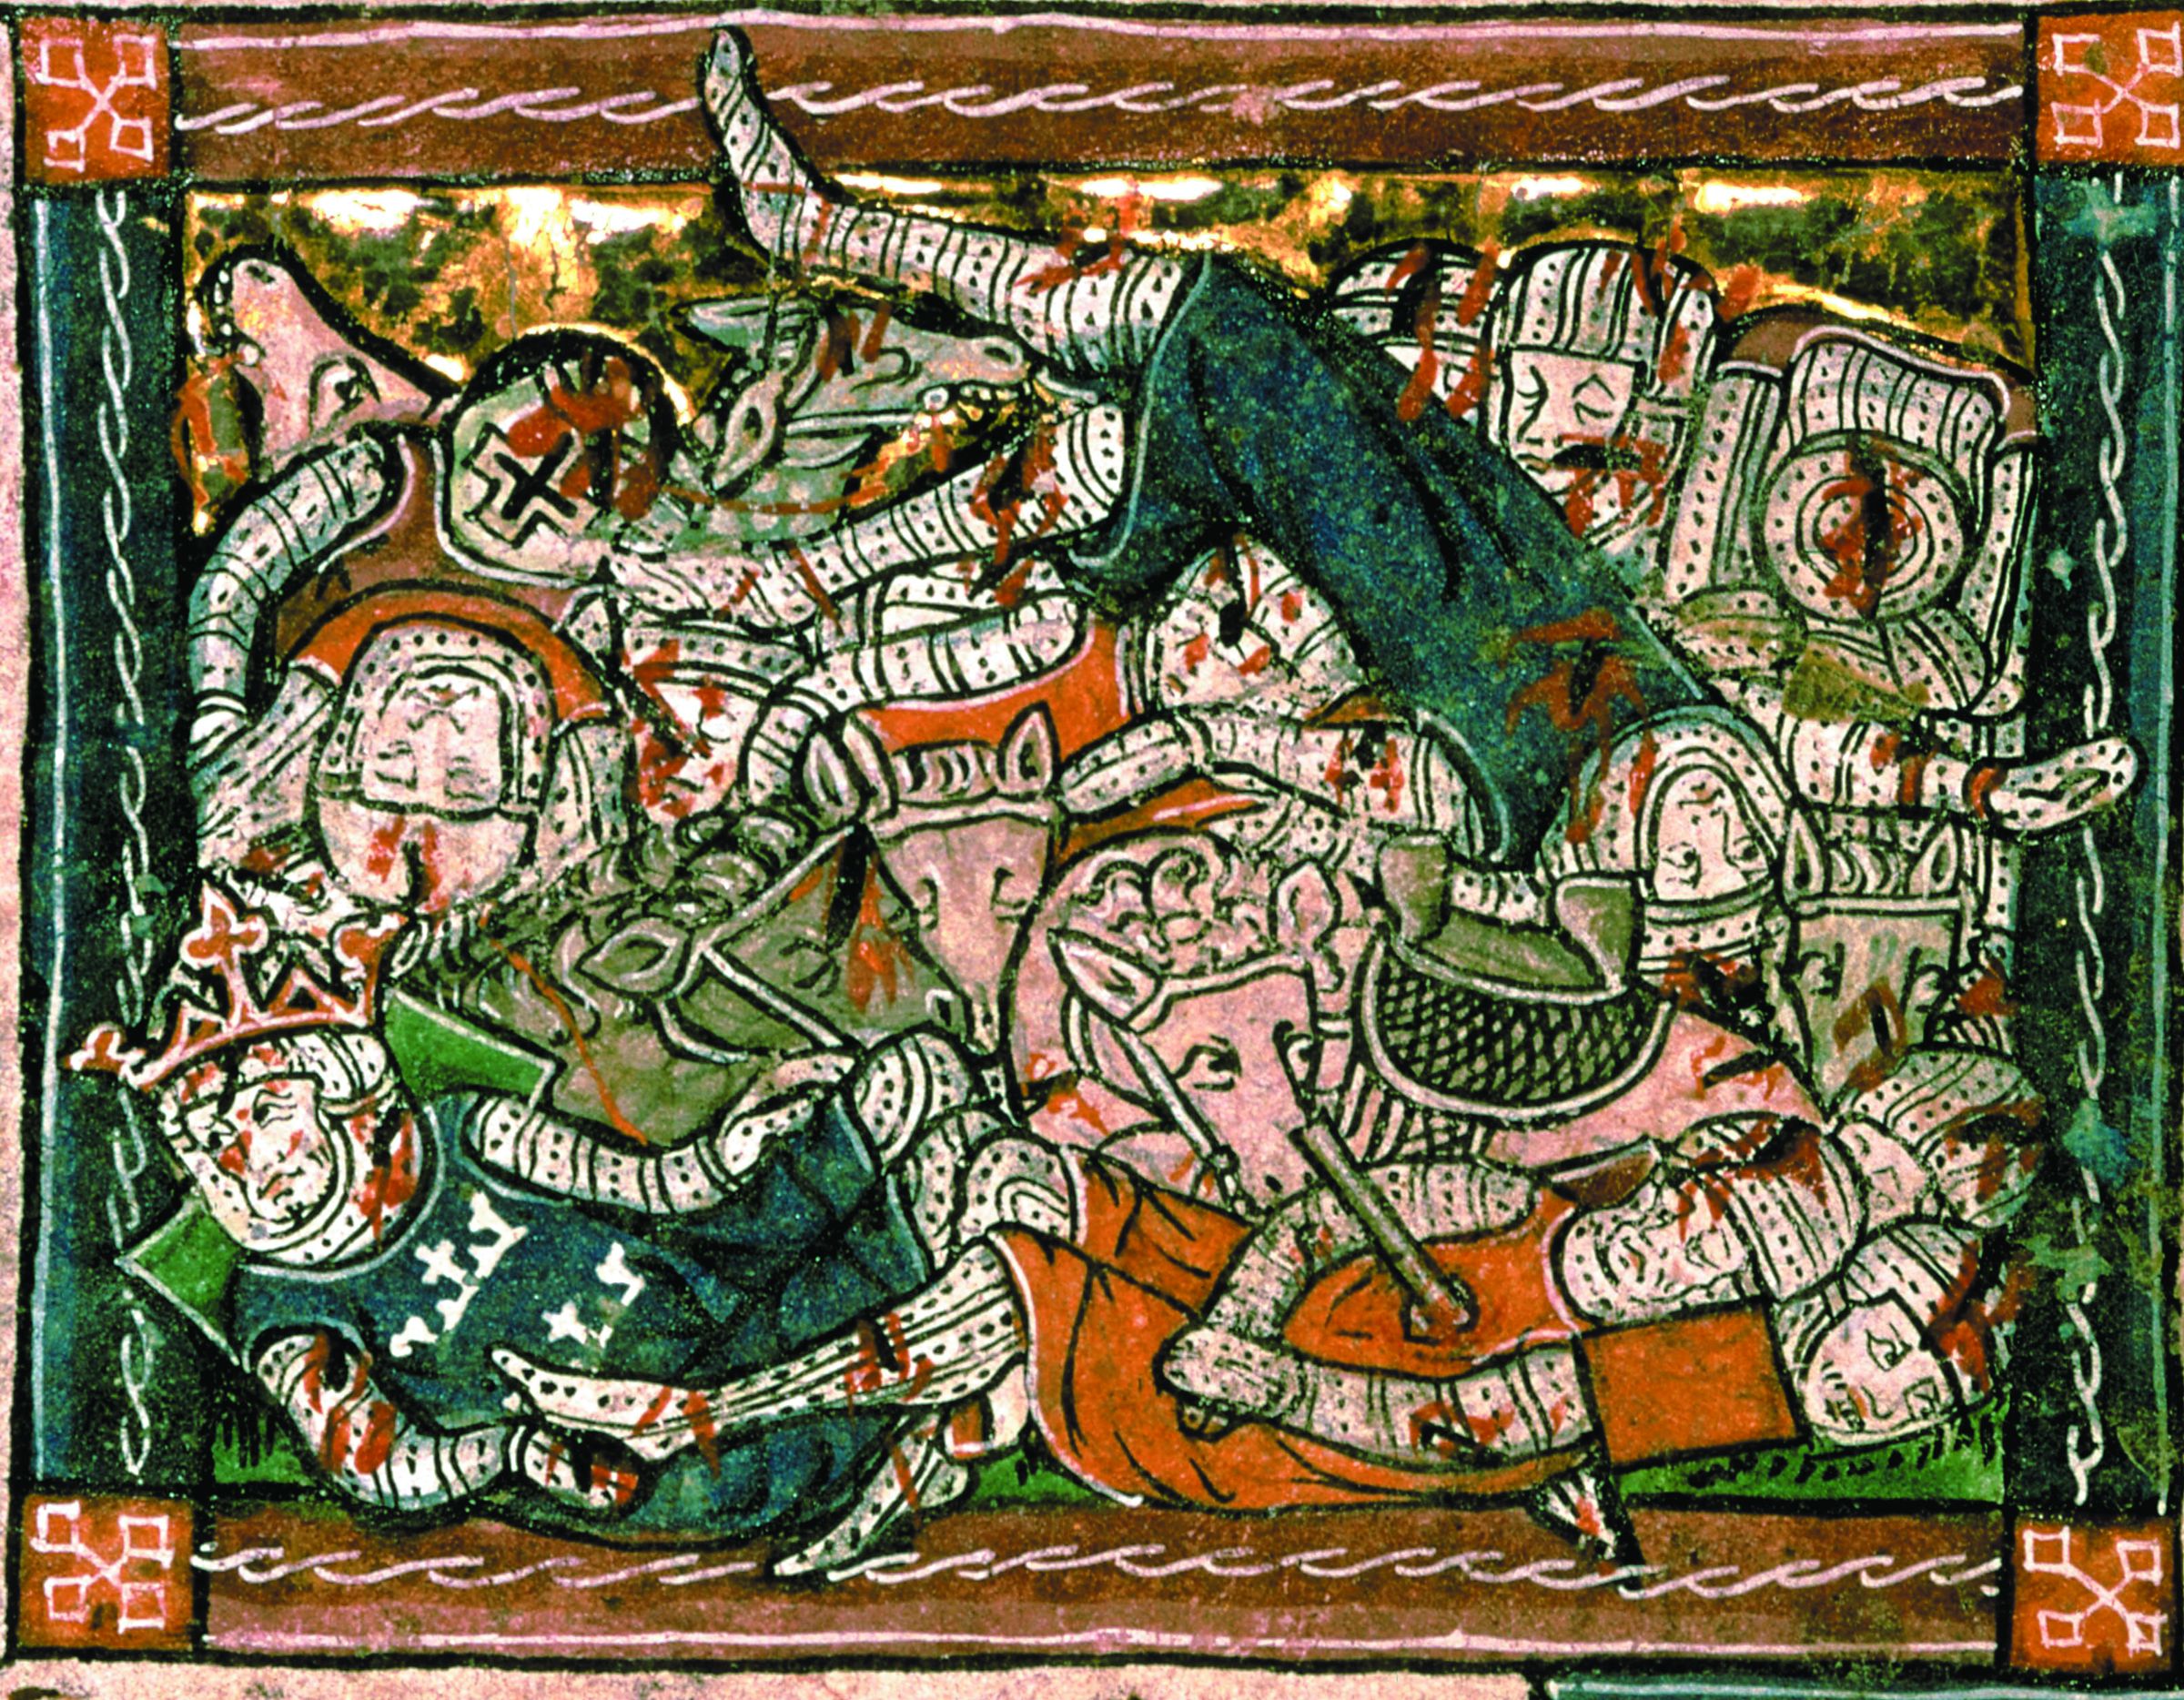 The Rape of Guinevere (Celtic Warrior)